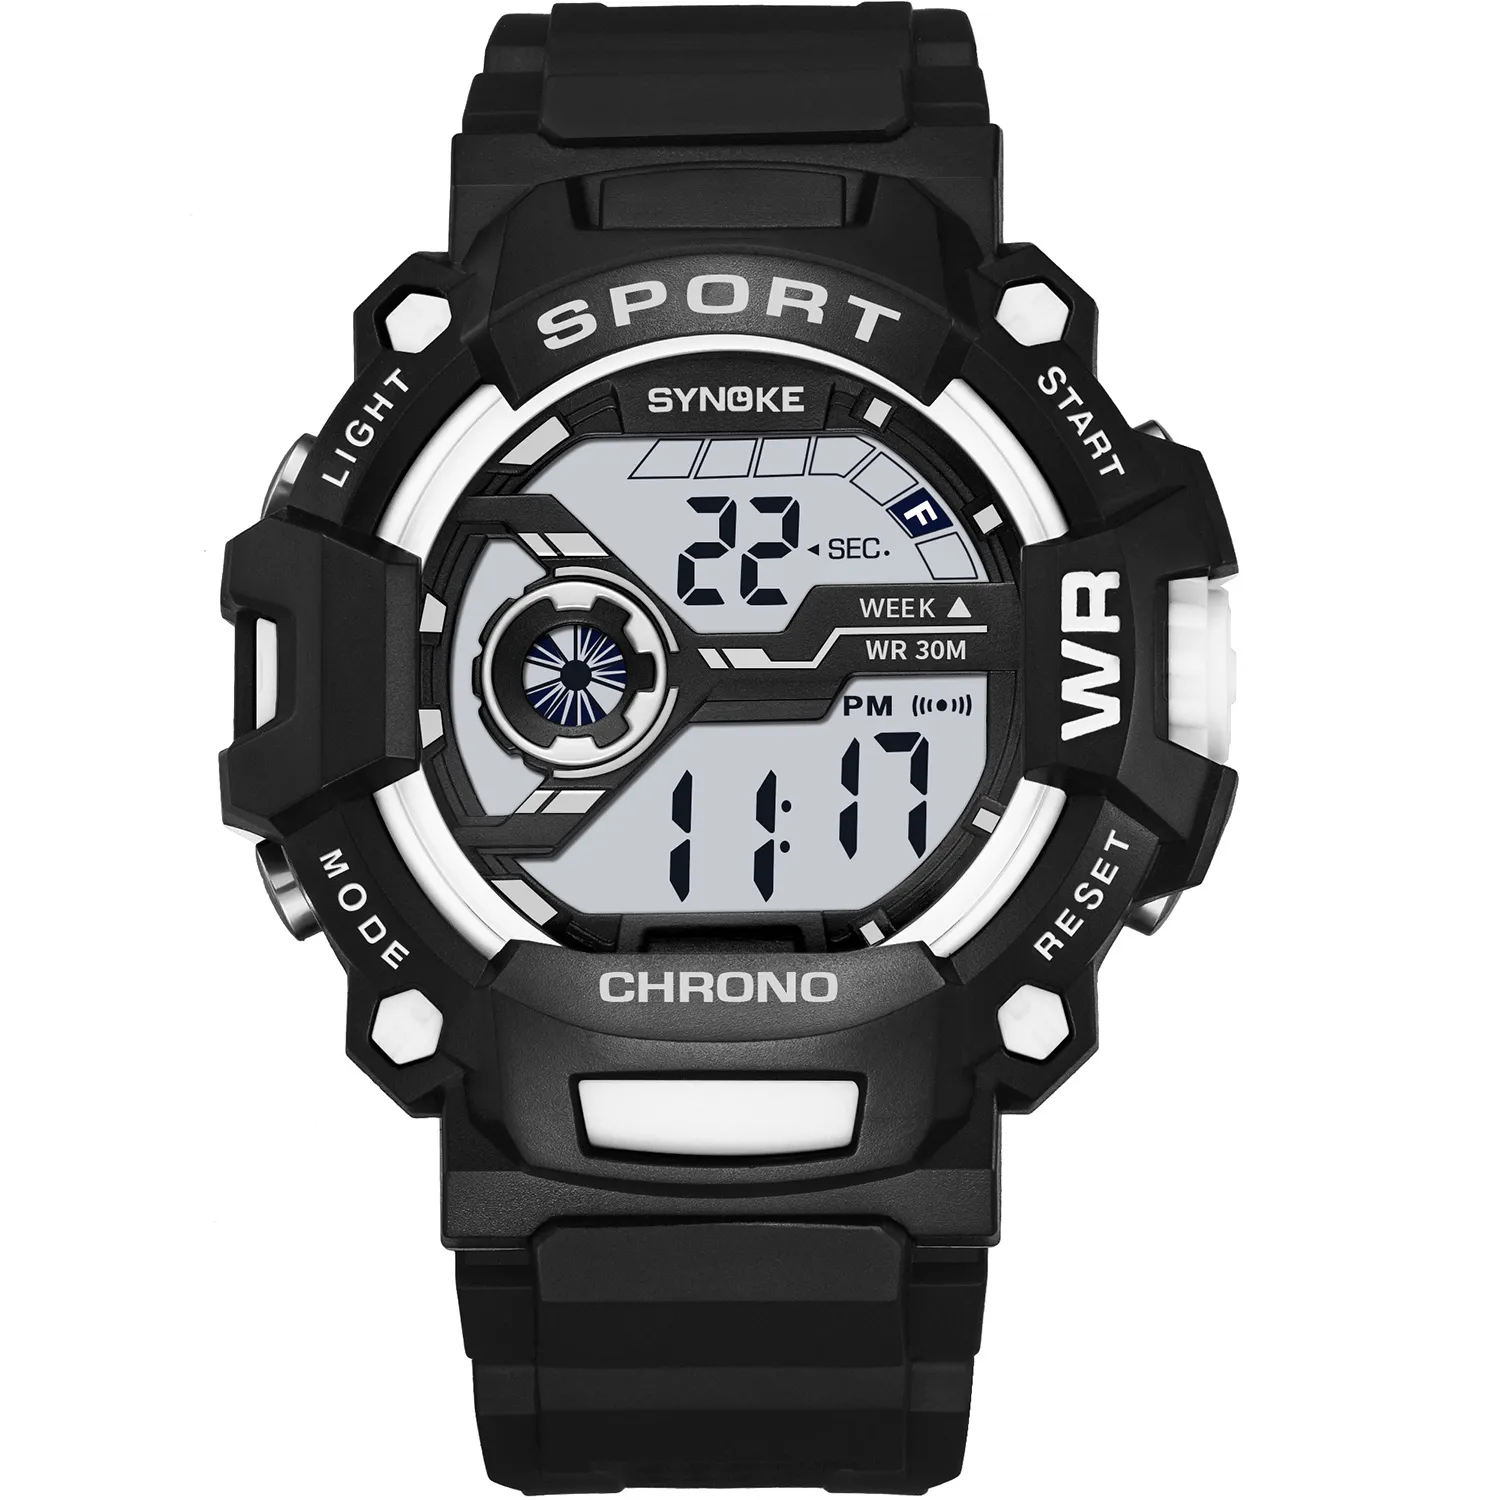 パナーファッションメンデジタルウォッチ防水屋外スポーツメンズスポーツリストウォッチLED MEN241Bの電子時計